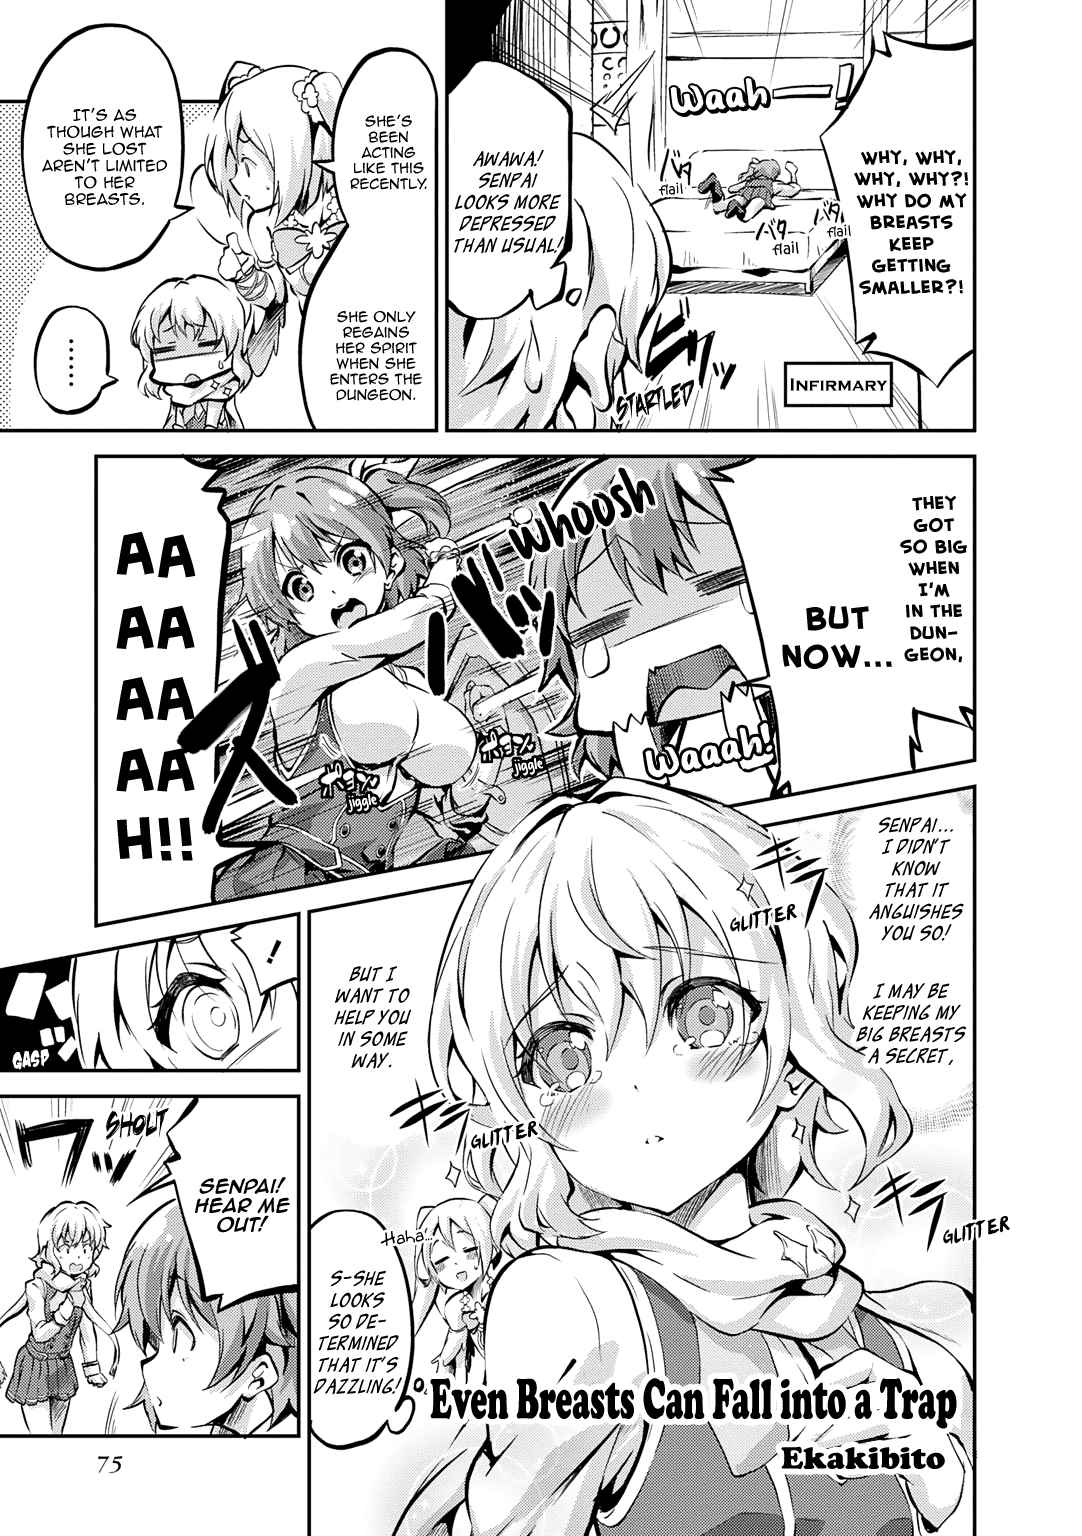 ω Labyrinth Dengeki Comic Anthology Ch. 9 Even Breasts Can Fall into a Trap (Ekakibito)